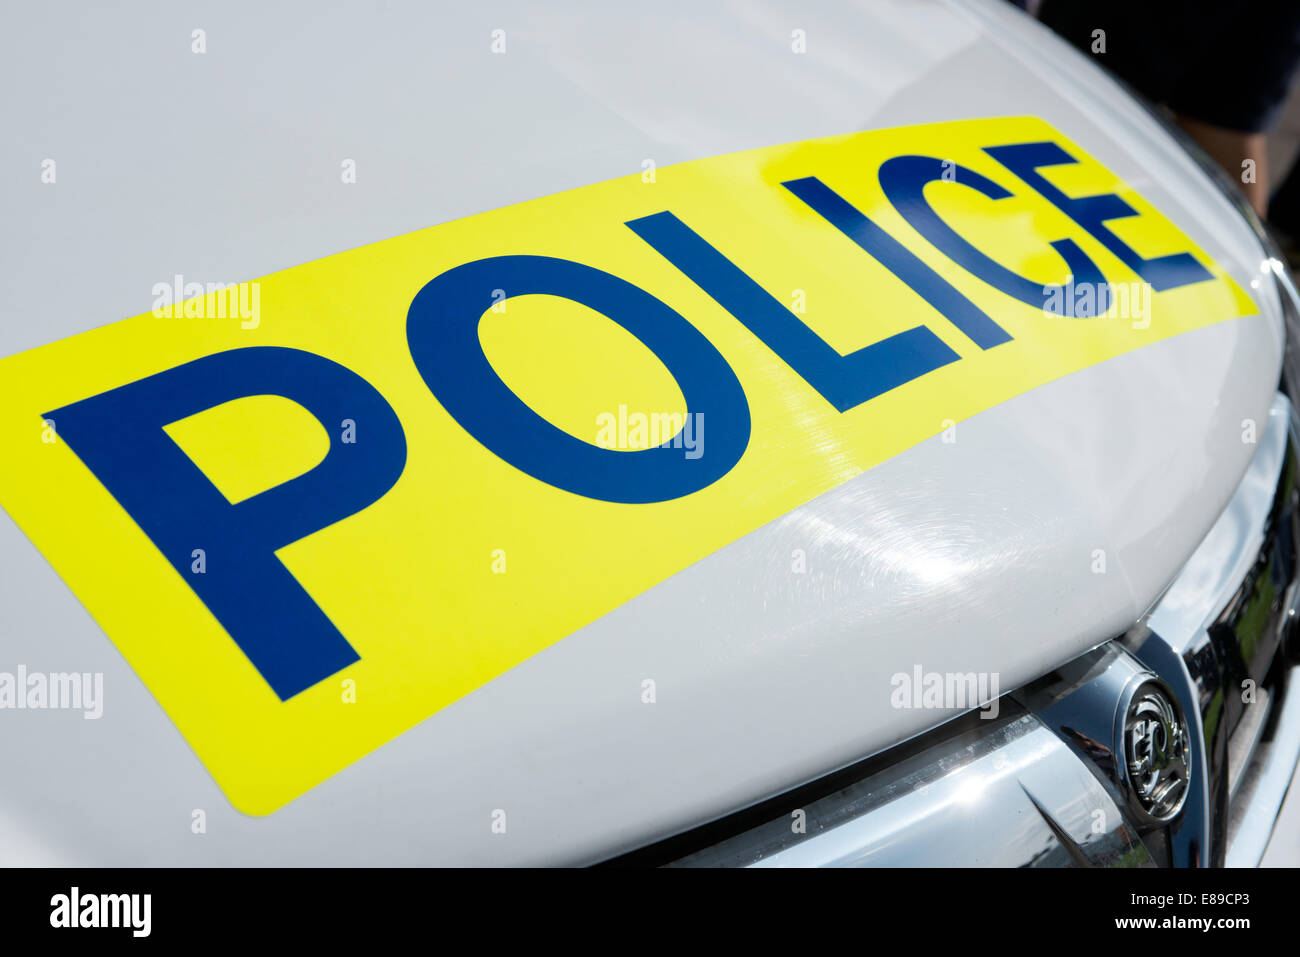 Das Wort Polizei auf einem Schild auf der Motorhaube eines weißen britischen Vauxhall Polizeiautos Stockfoto